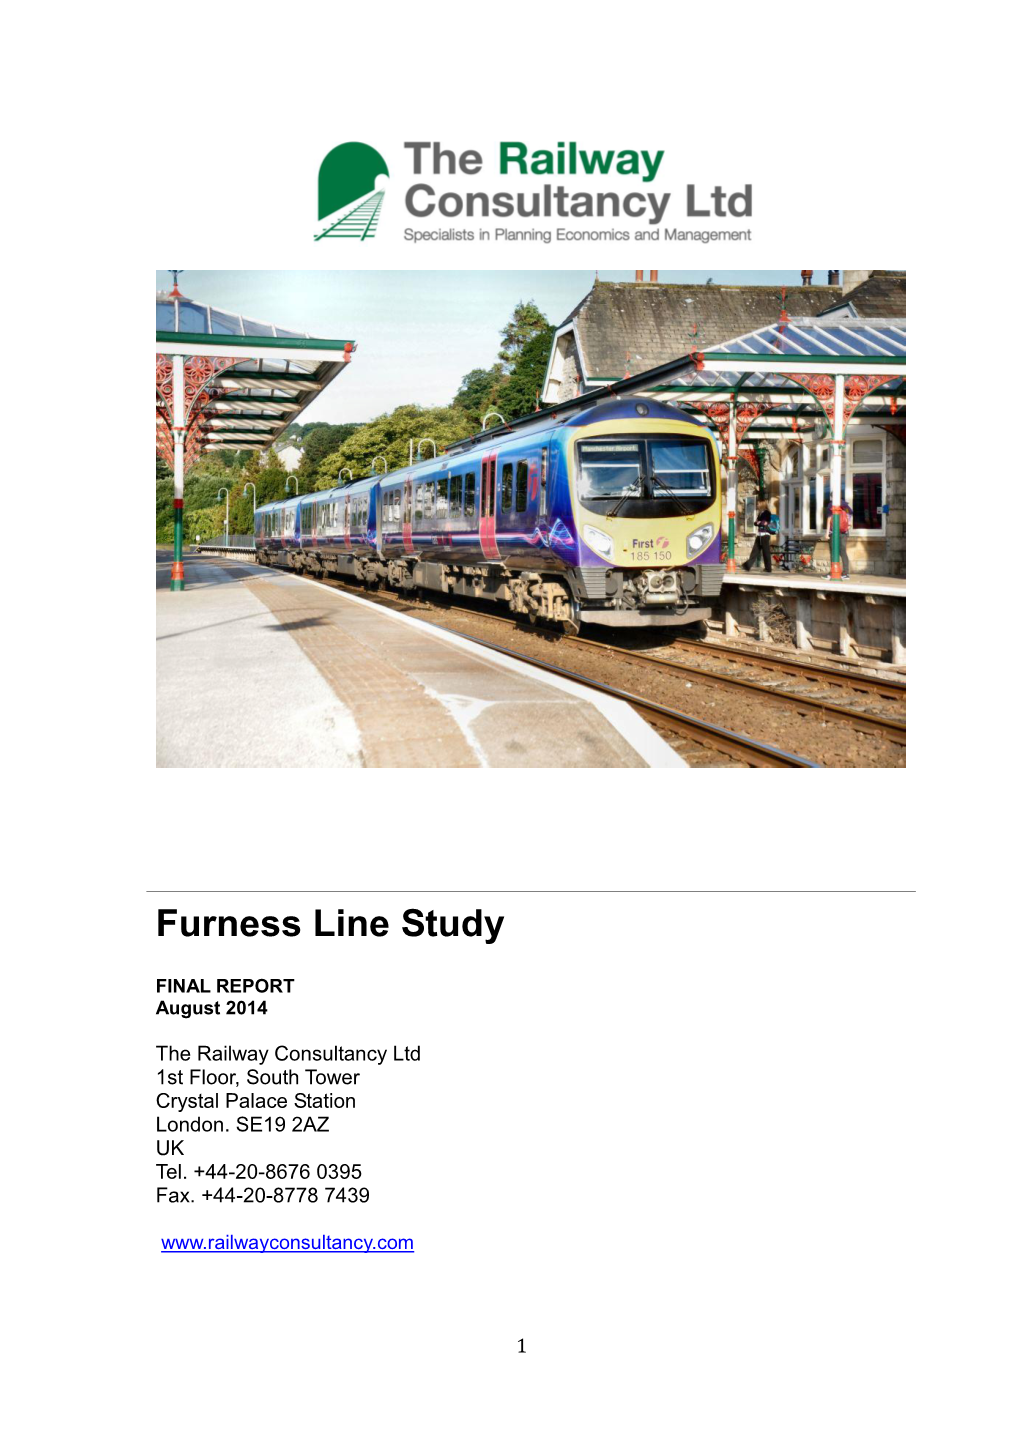 Furness Line Study